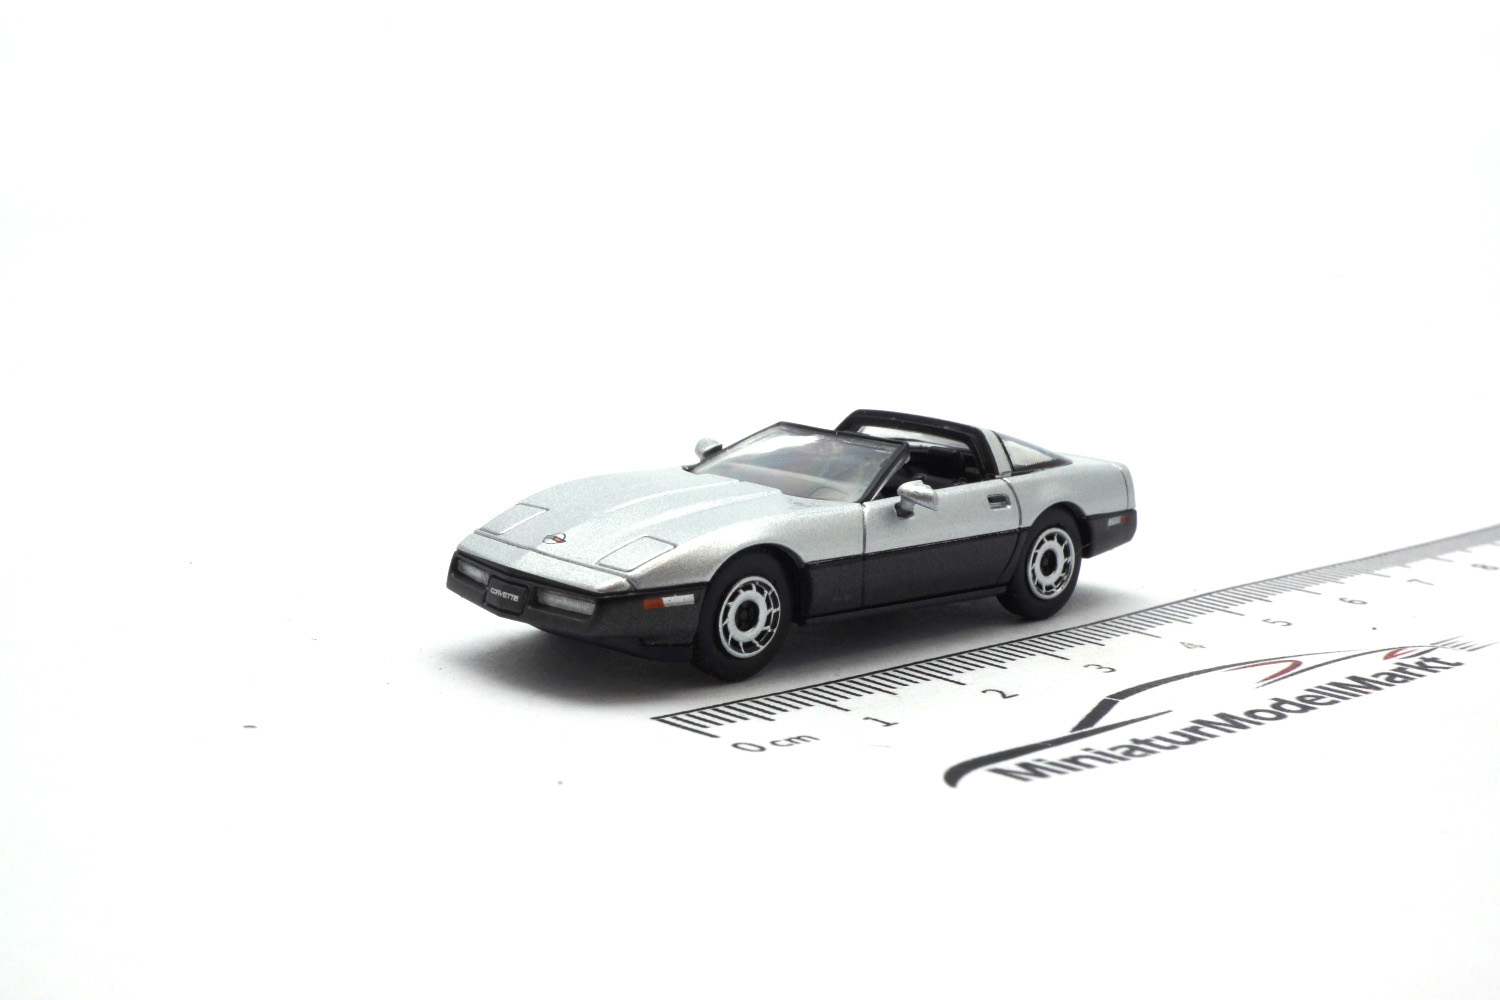 PCX87 PCX870318 Chevrolet Corvette C4, silber/metallic-grau, Targadach liegt ein, 1984 1:87